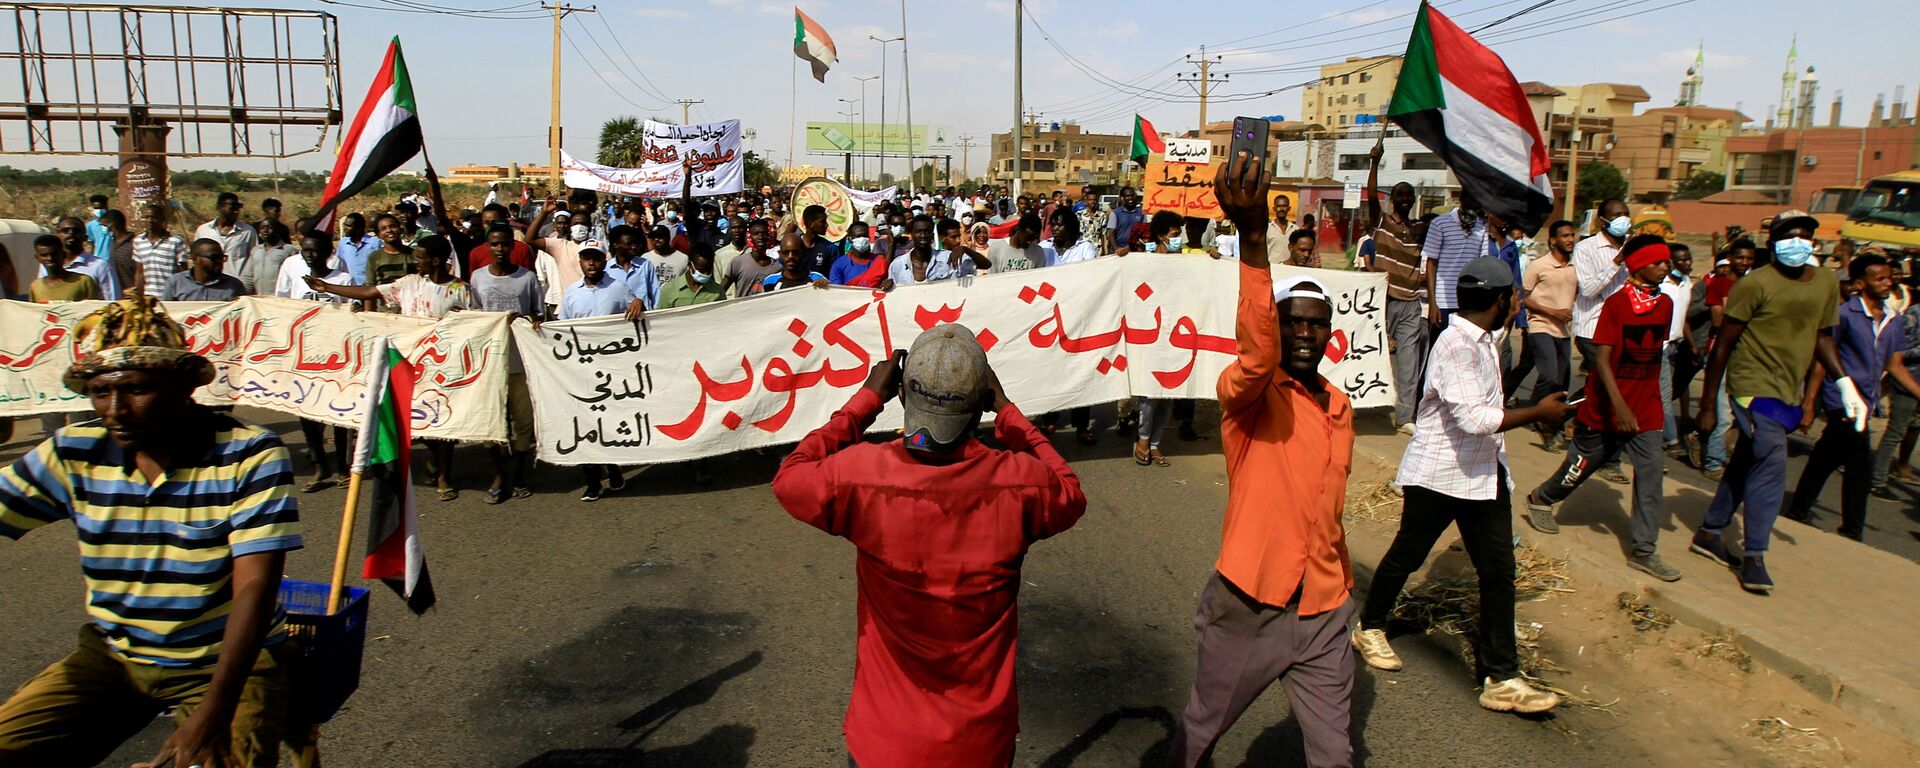 متظاهرون يحتجون ضد الانقلاب العسكري في خرطوم، السودان 30 أكتوبر 2021 - سبوتنيك عربي, 1920, 21.11.2021